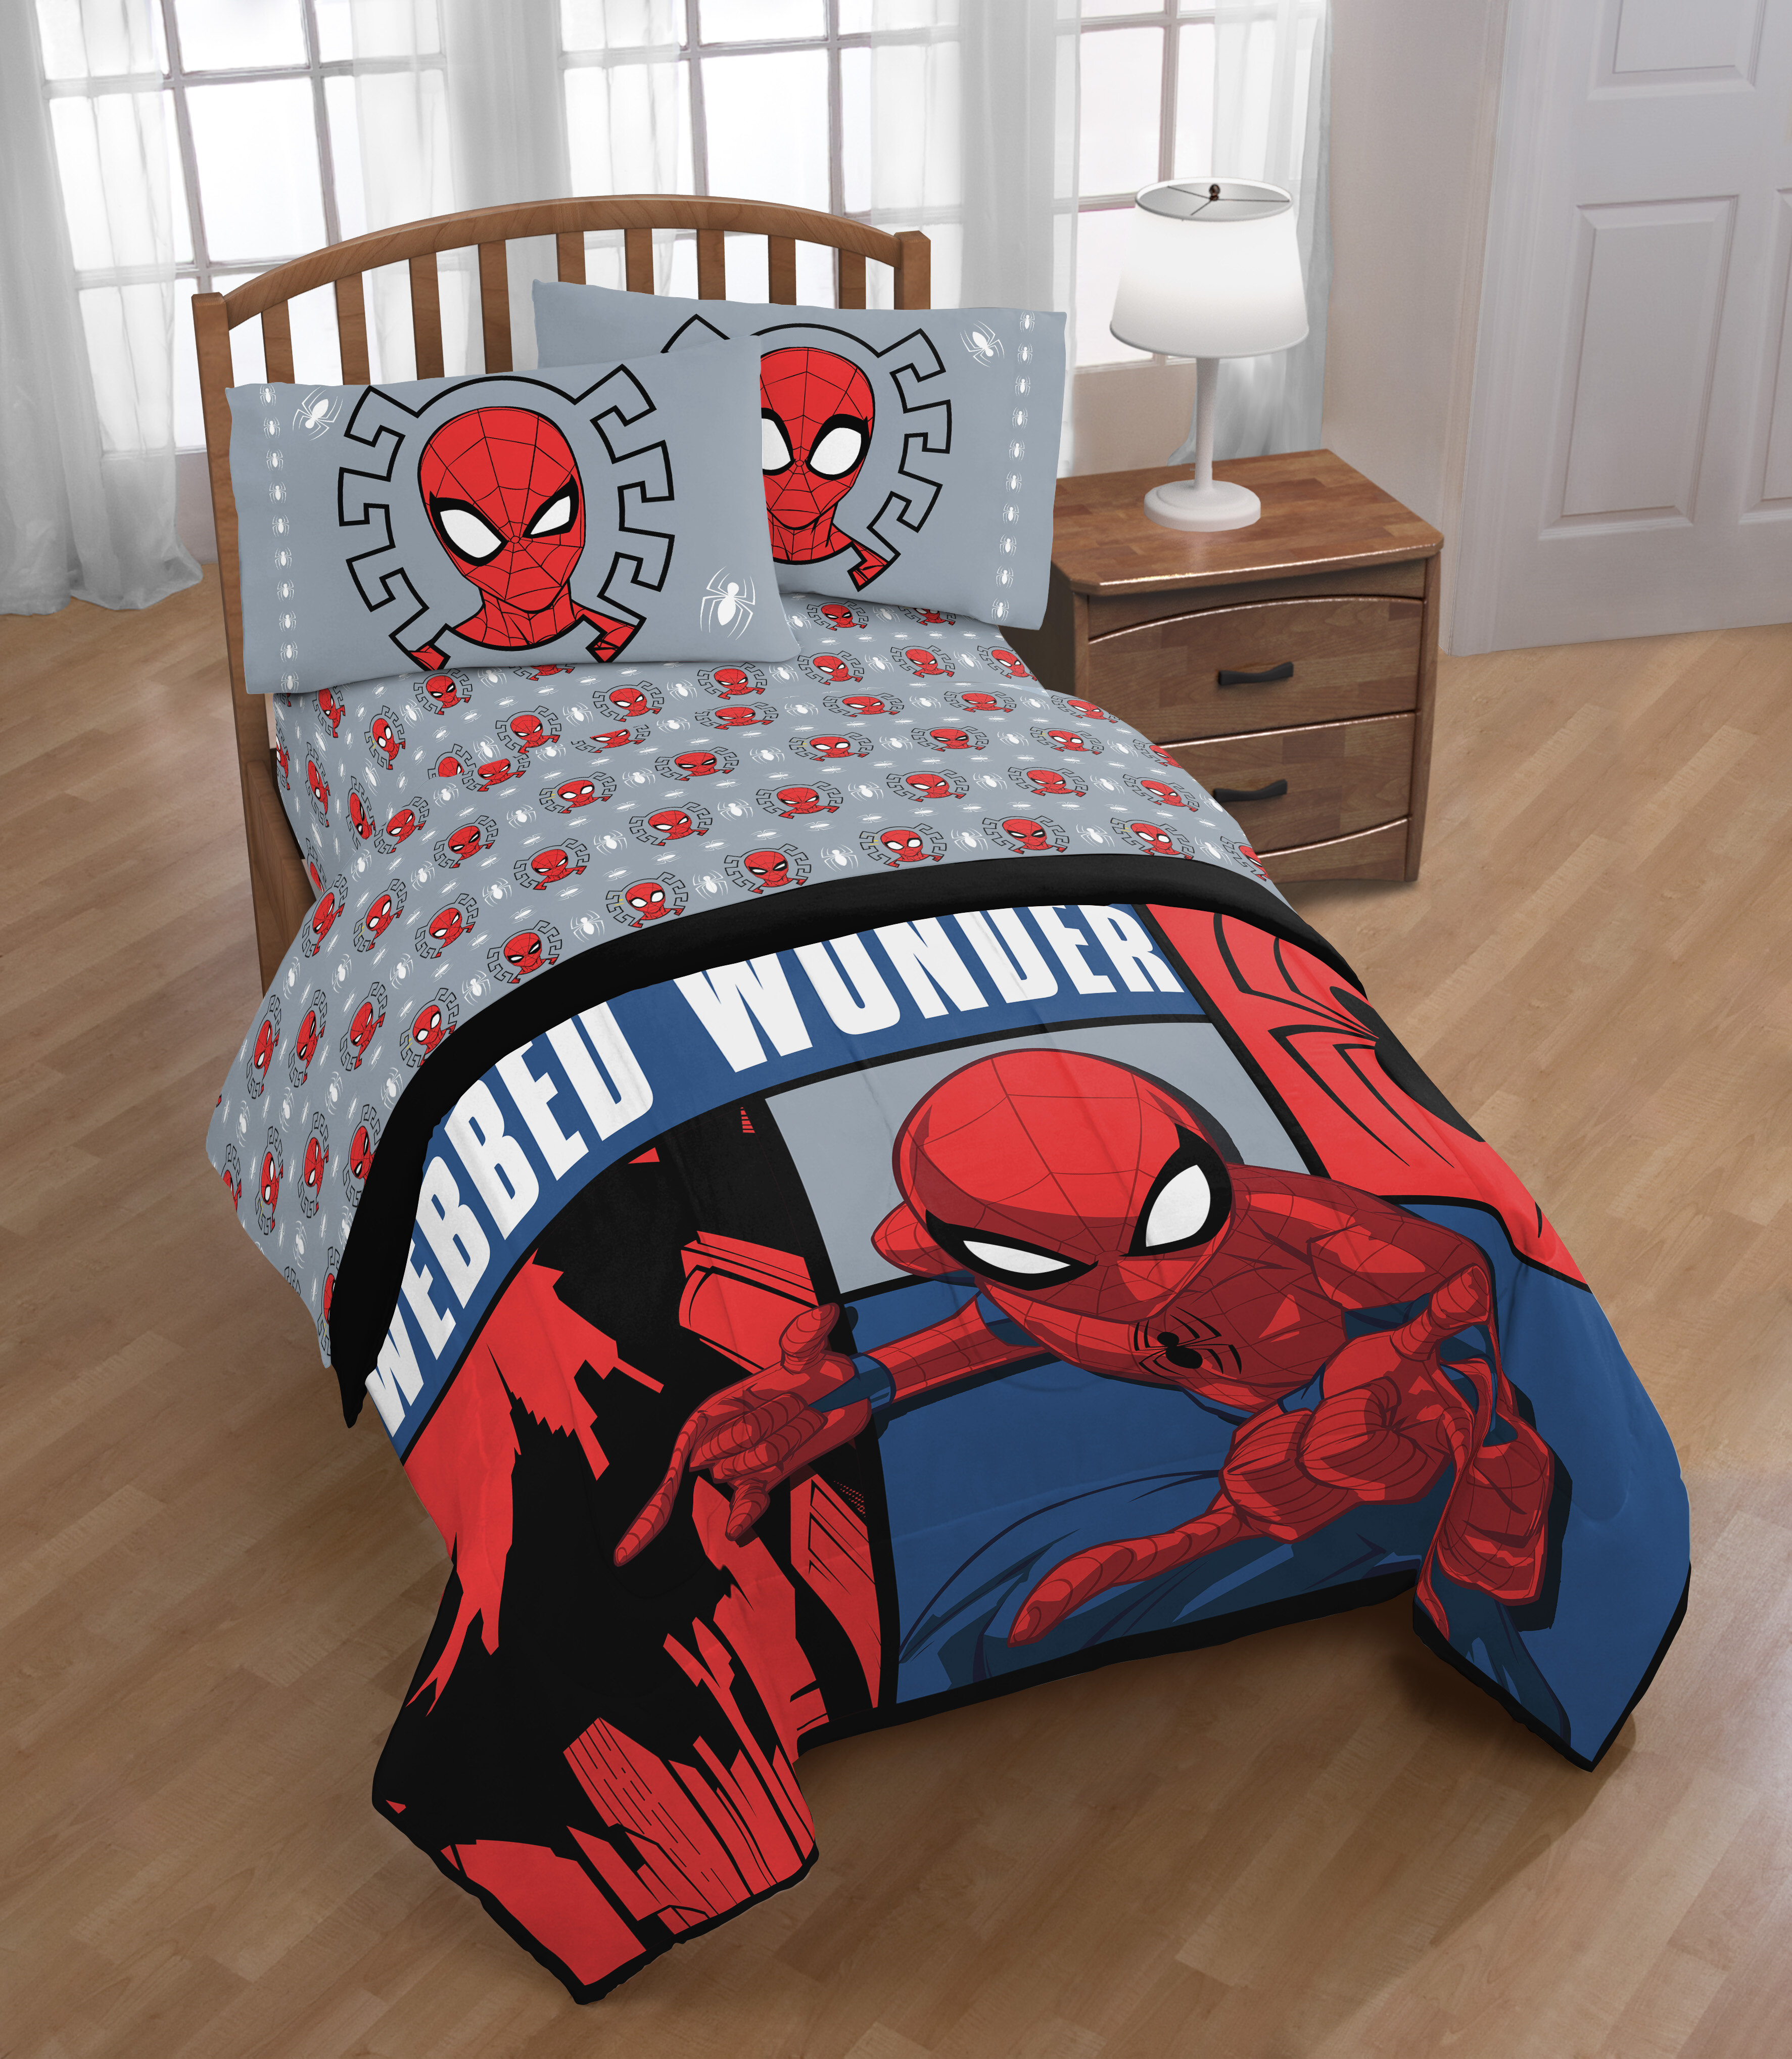 superhero comforter twin